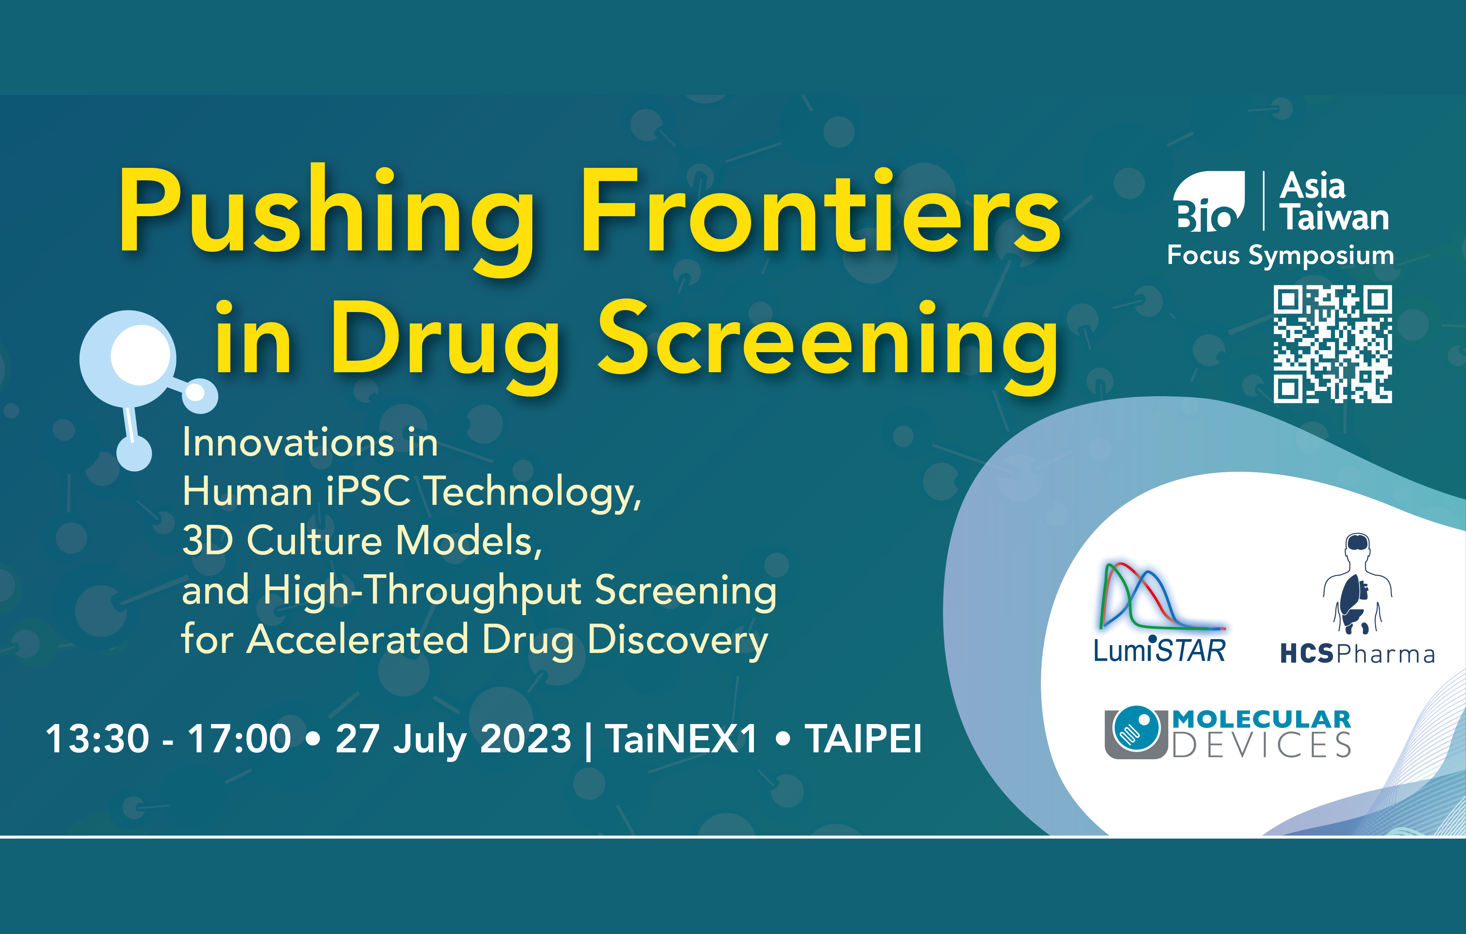 BIO Asia Focus Symposium: Pushing Frontiers in Drug Screening